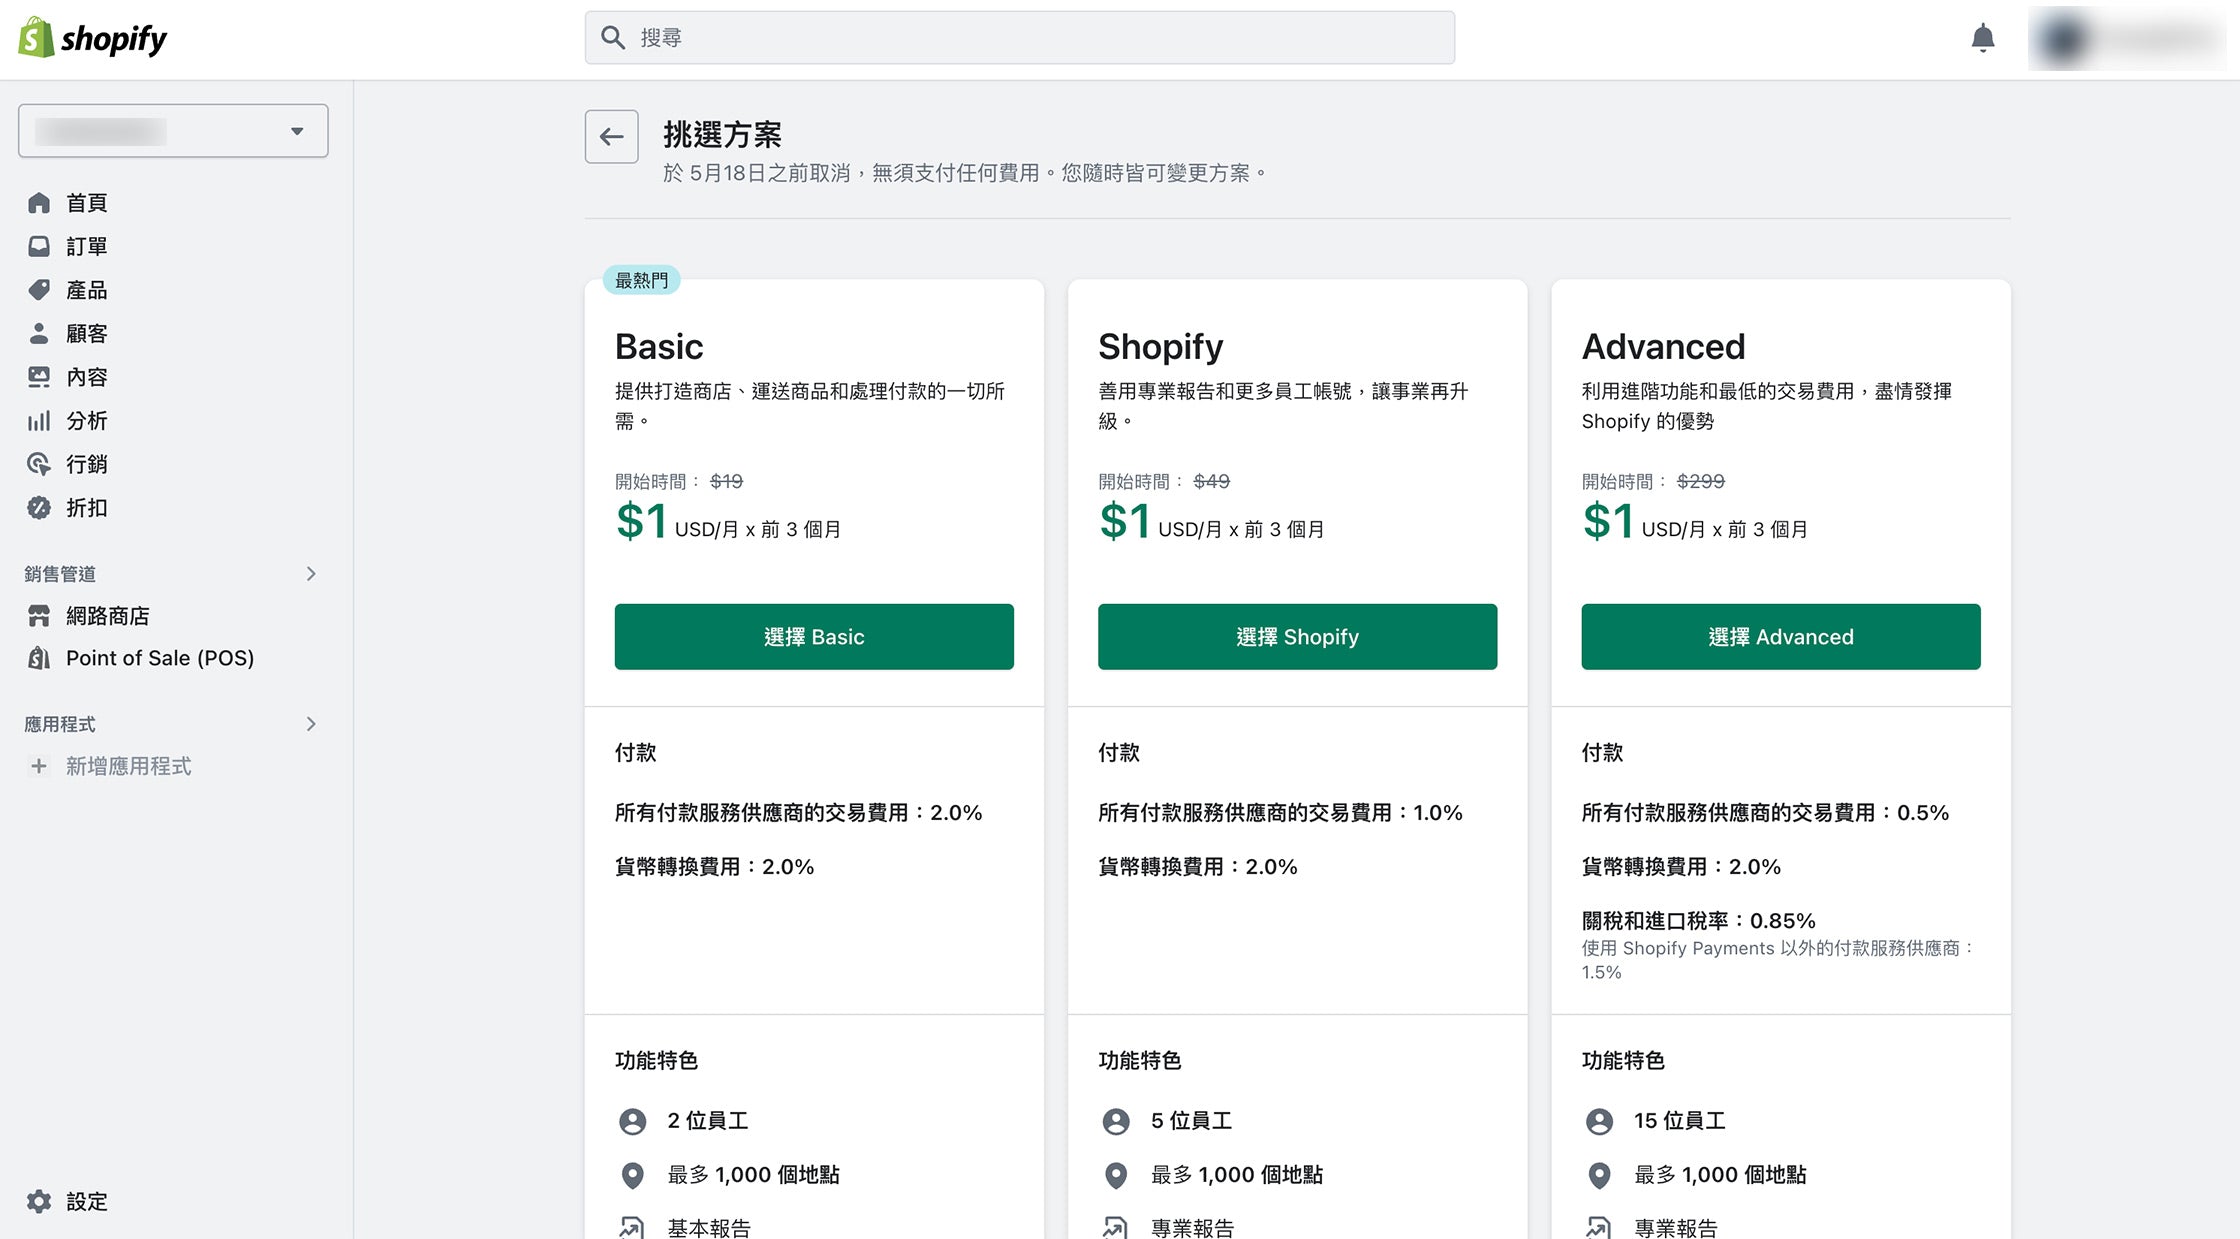 Shopify 台灣提供的三個月都是月費1美金的超值方案